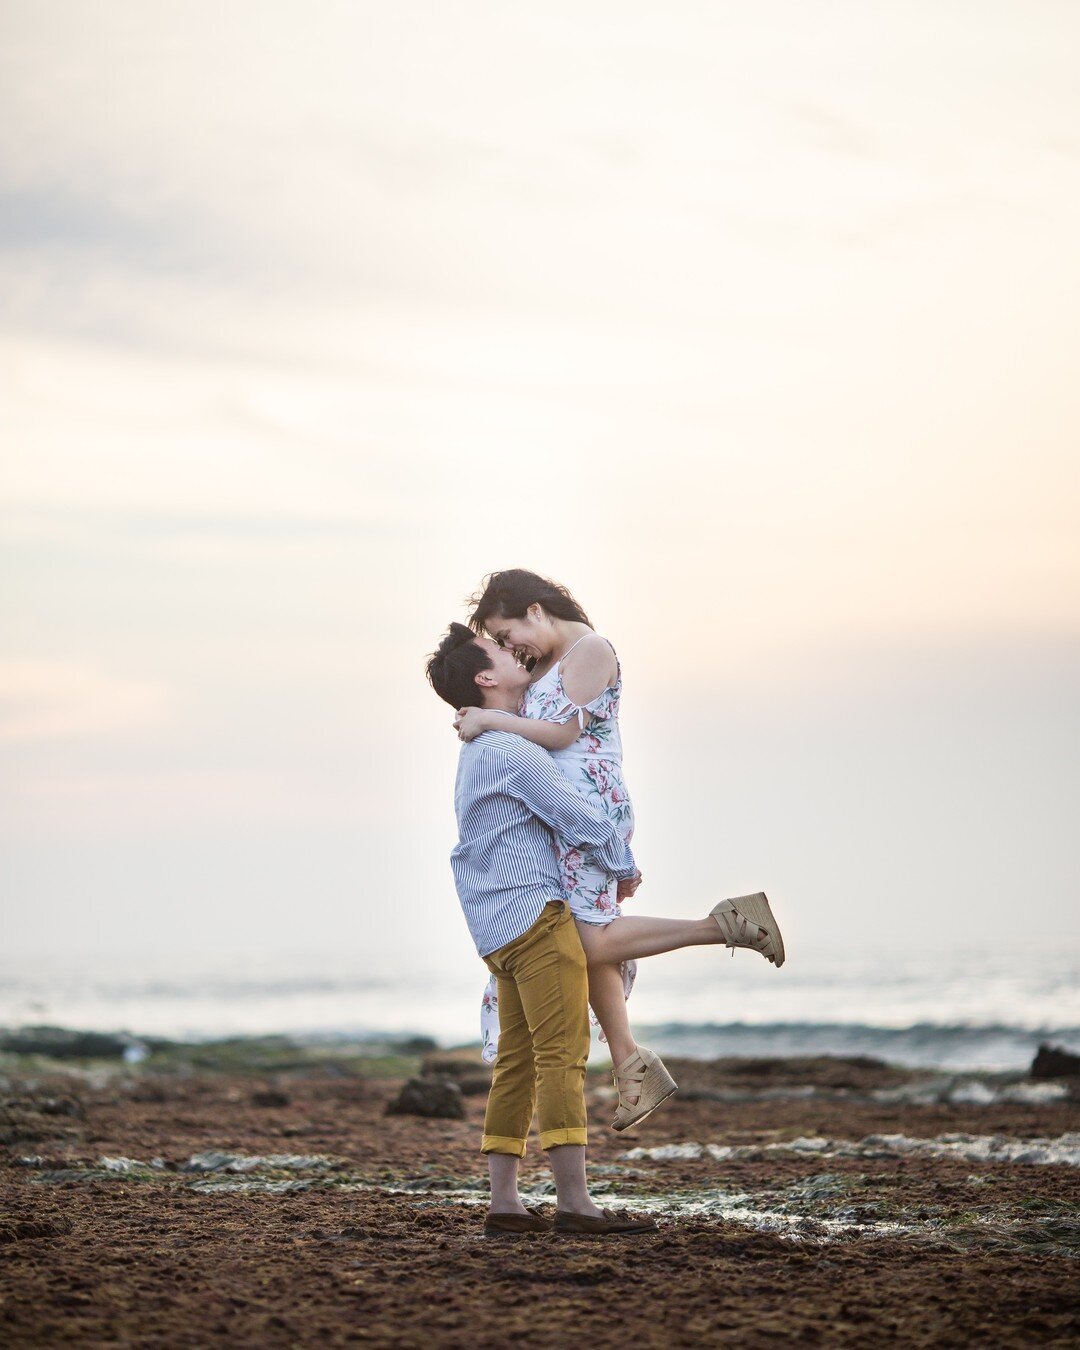 [michelle &amp; richard - engagement - 2/3]

the coastal version of the notebook

#thenotebook #engagement #engagementphotography #couple #wedding #sandiego